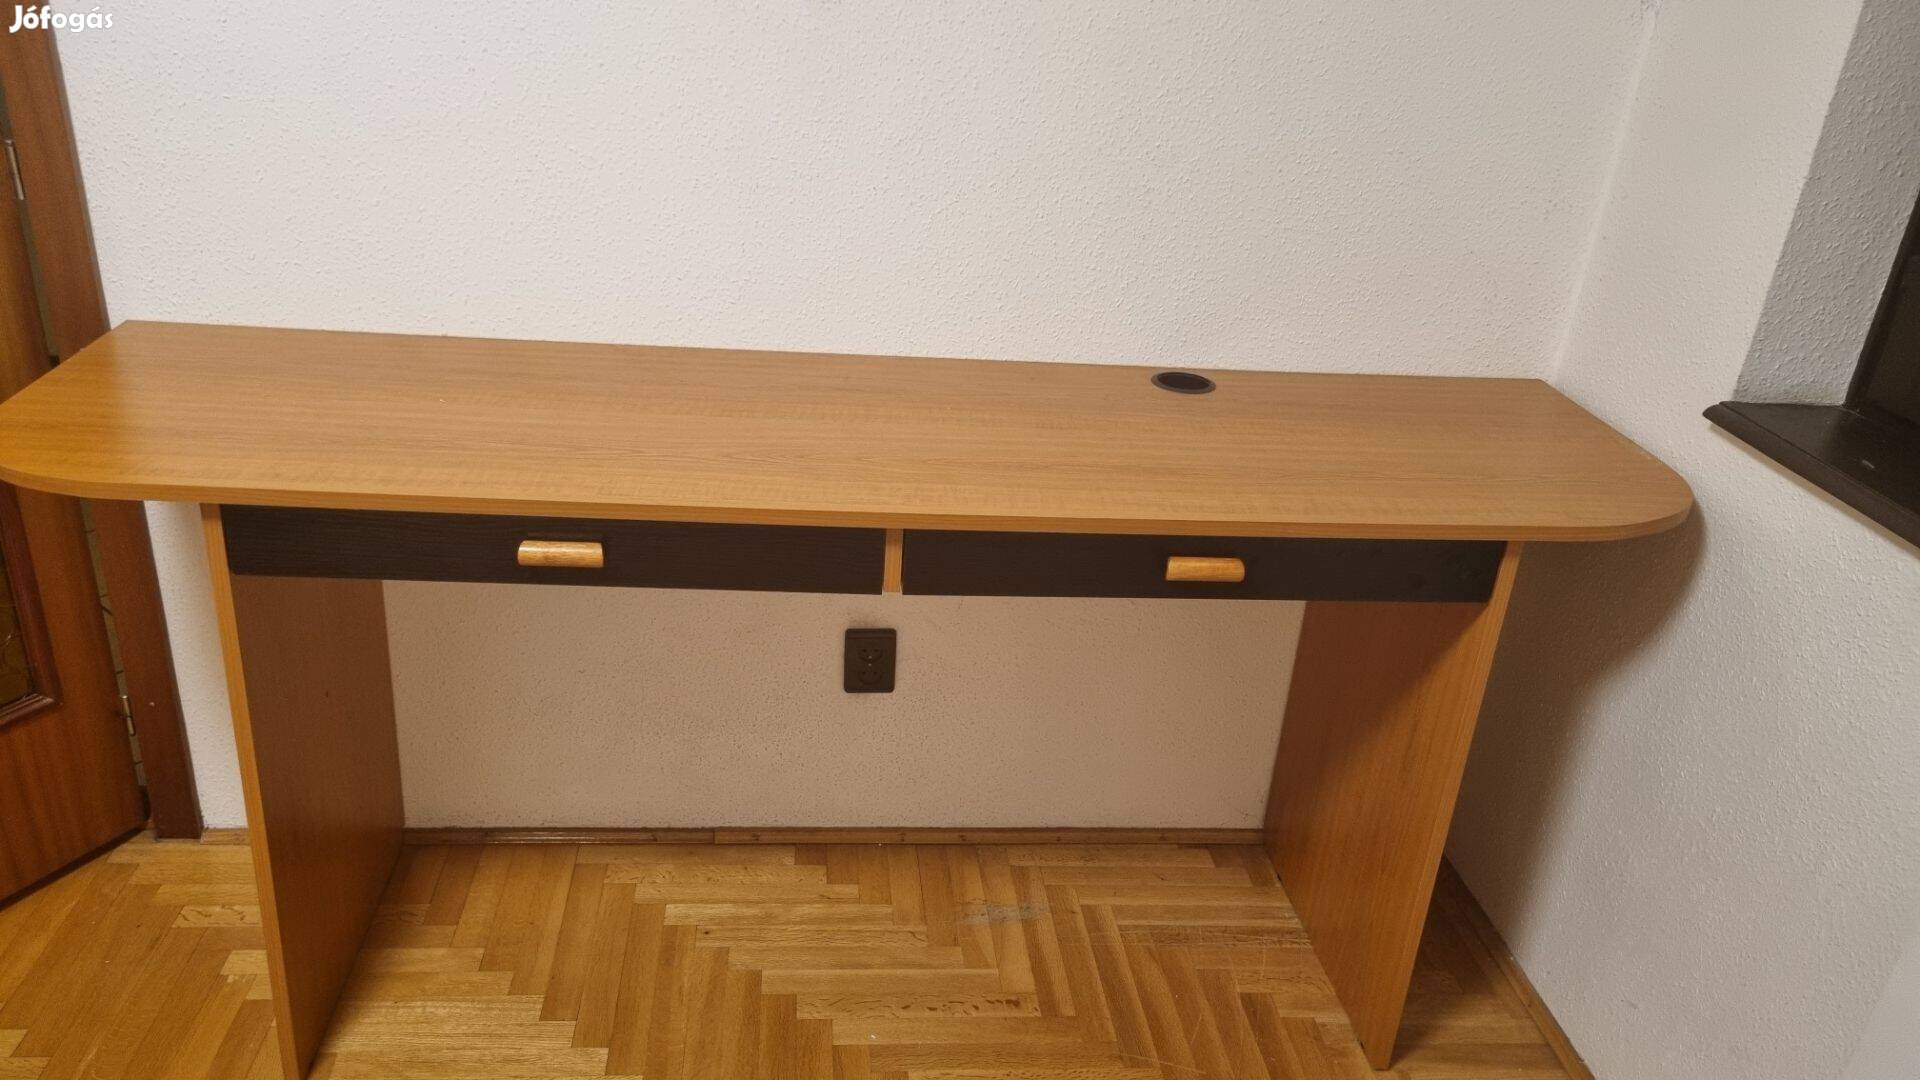 Egyedi méretű, magas íróasztal